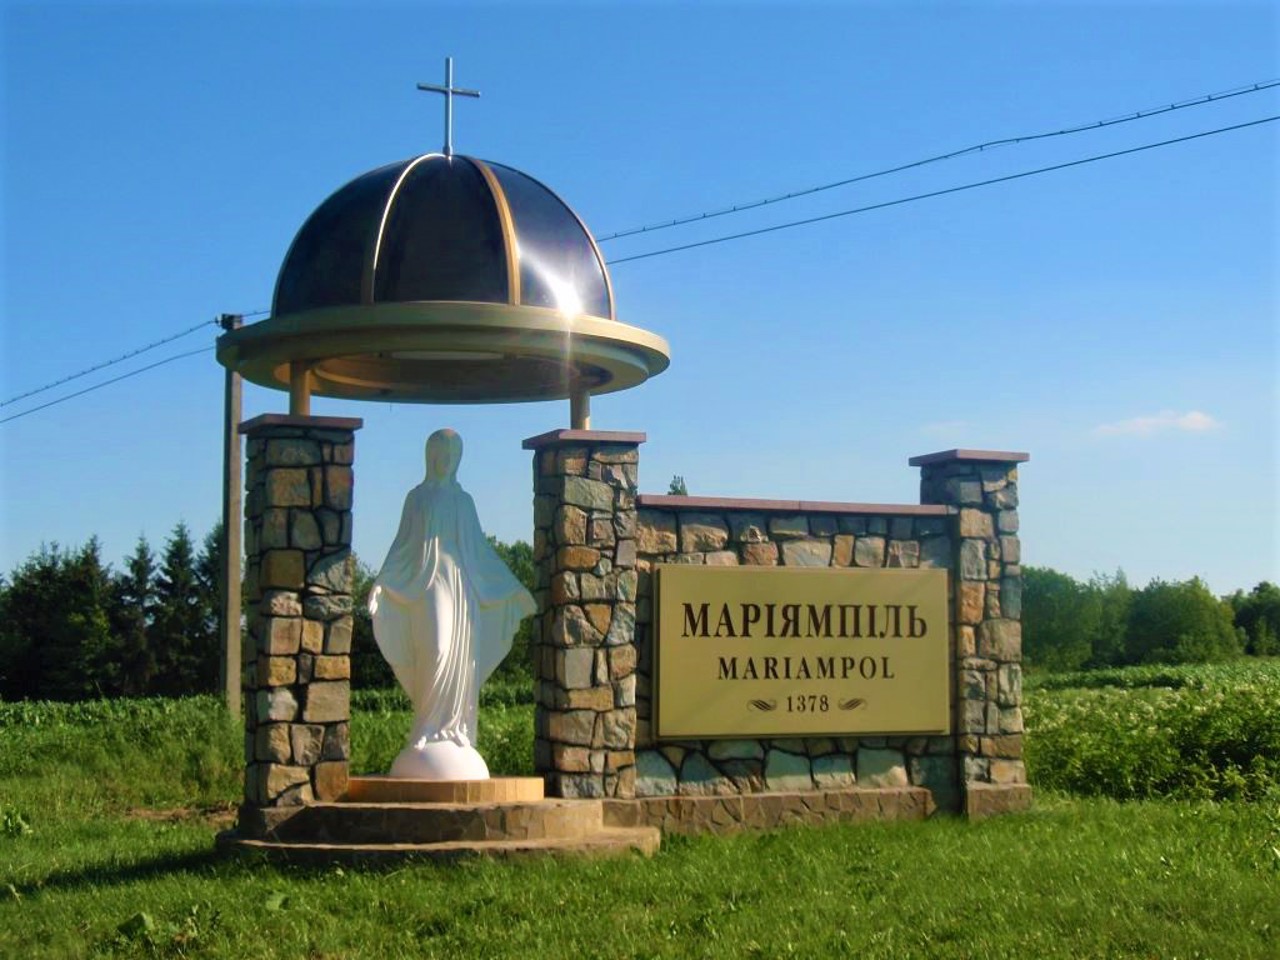 Mariiampil village